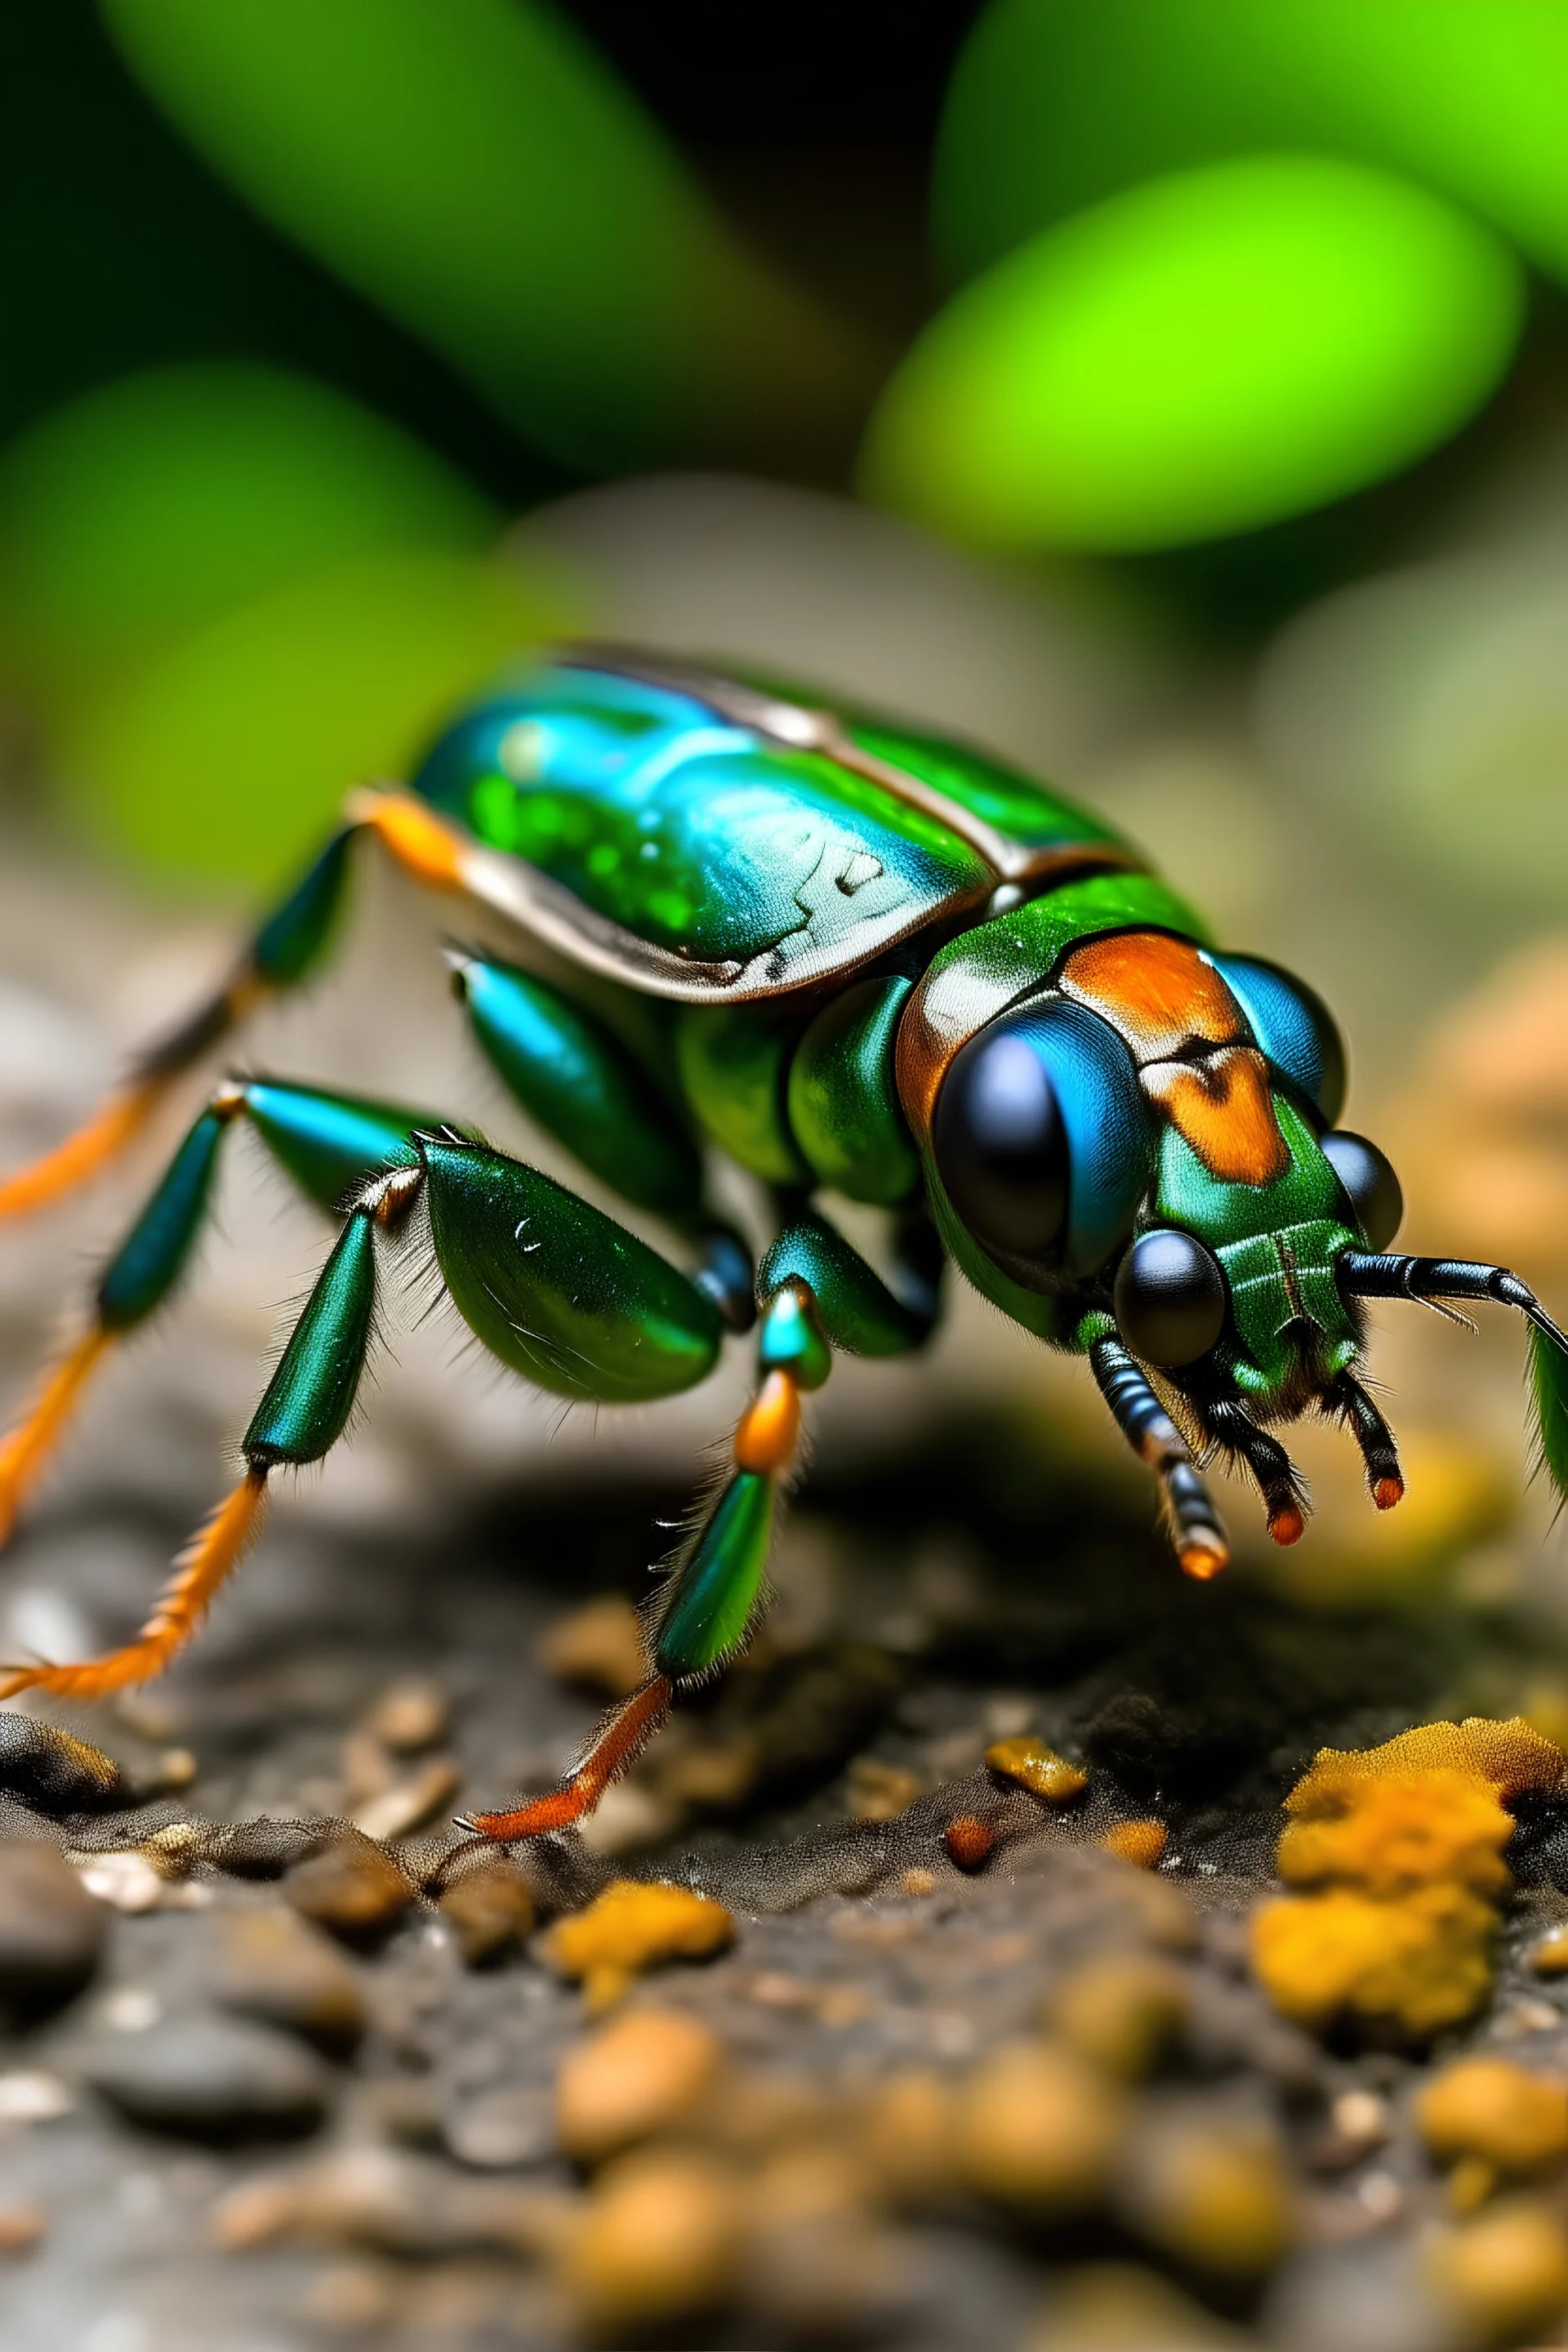 Macan kumbang